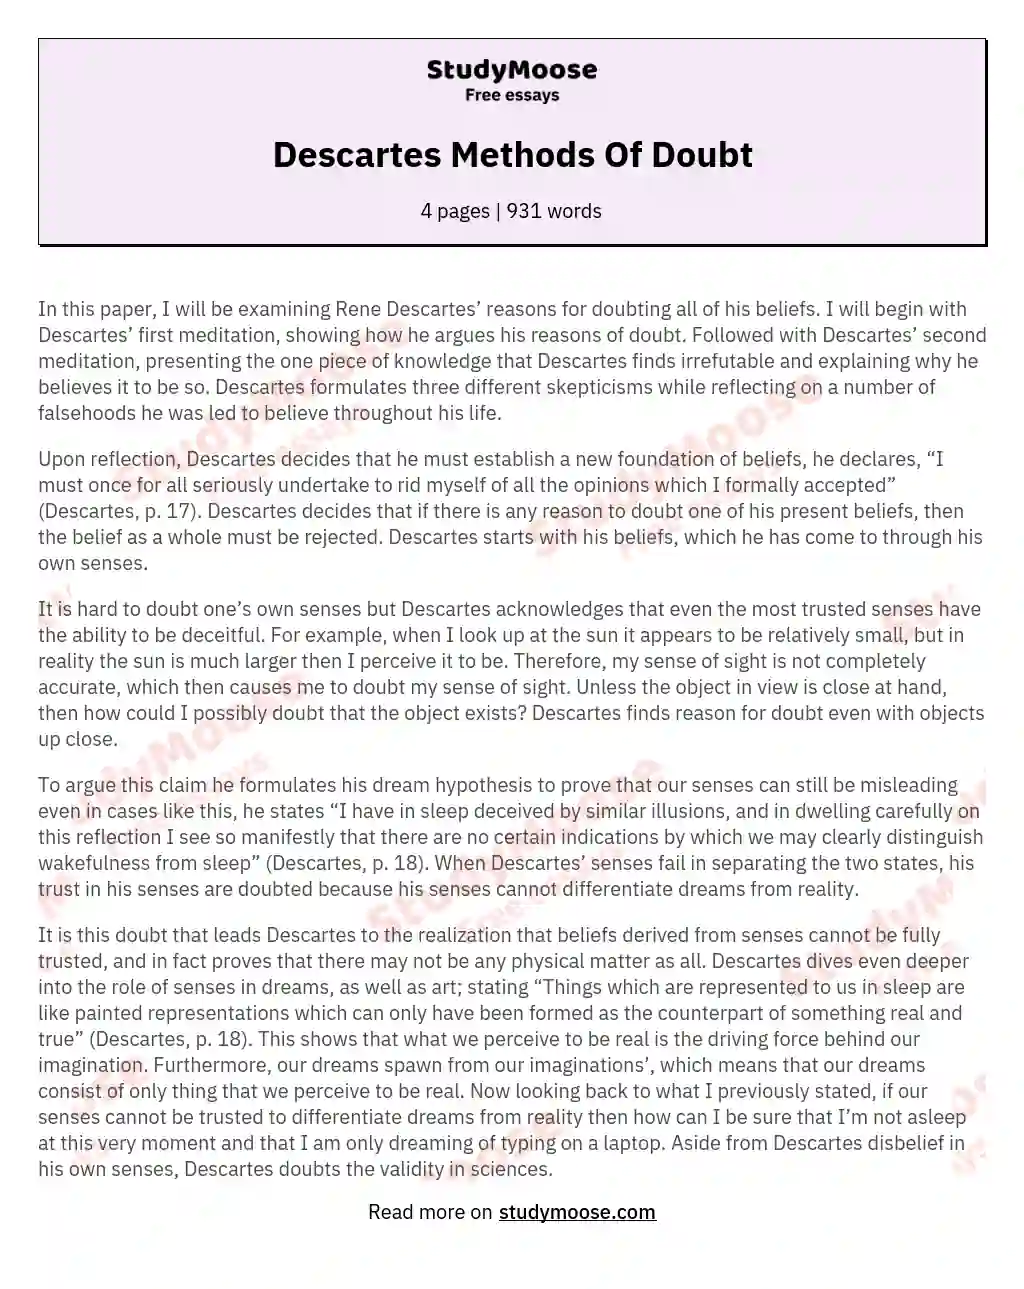 Descartes Methods Of Doubt essay